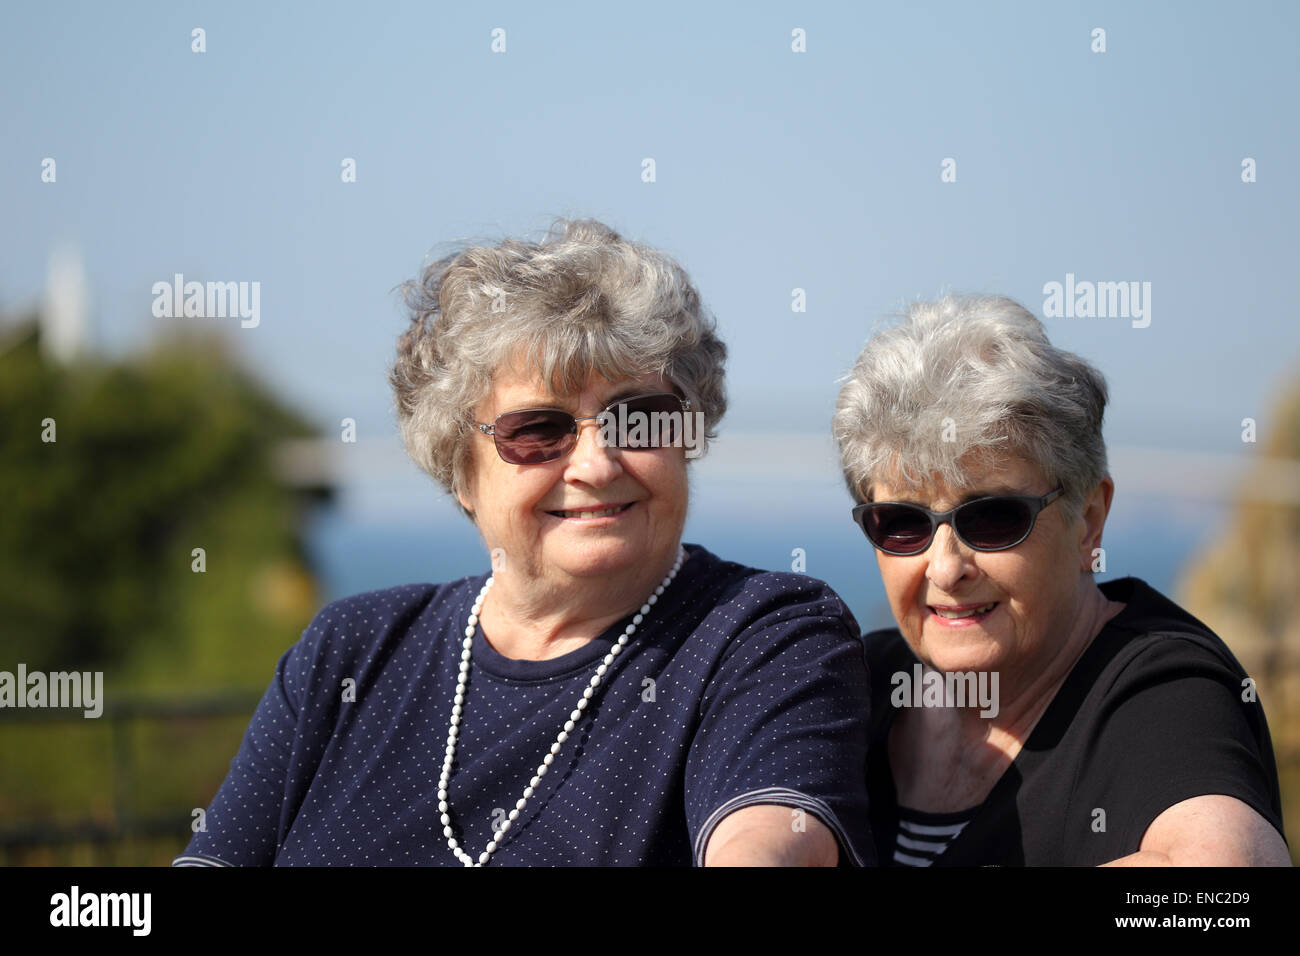 Smiling elderly soeurs jumelles en vacances Banque D'Images